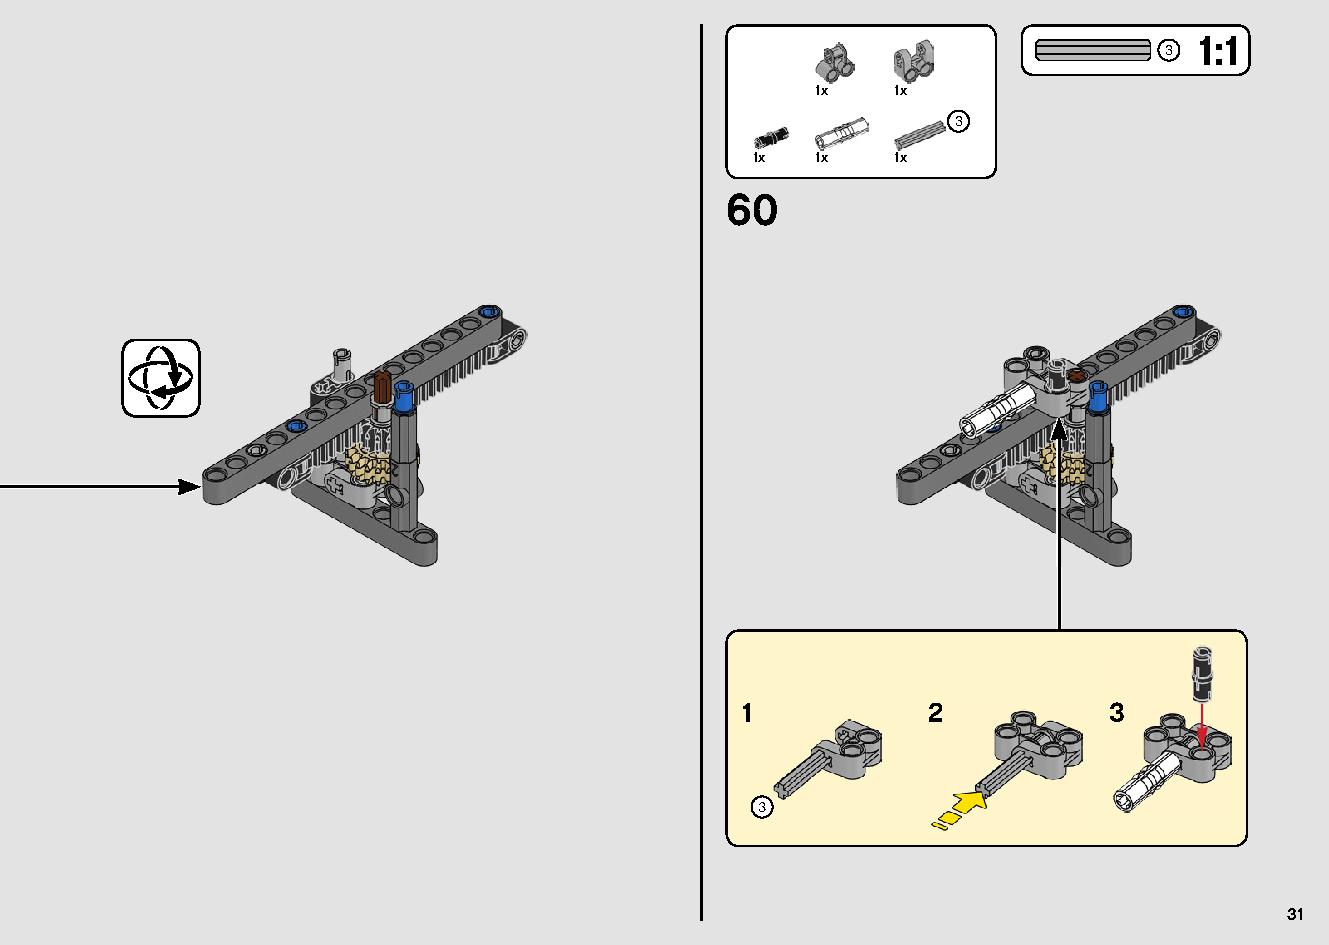 カタマランヨット 42105 レゴの商品情報 レゴの説明書・組立方法 31 page